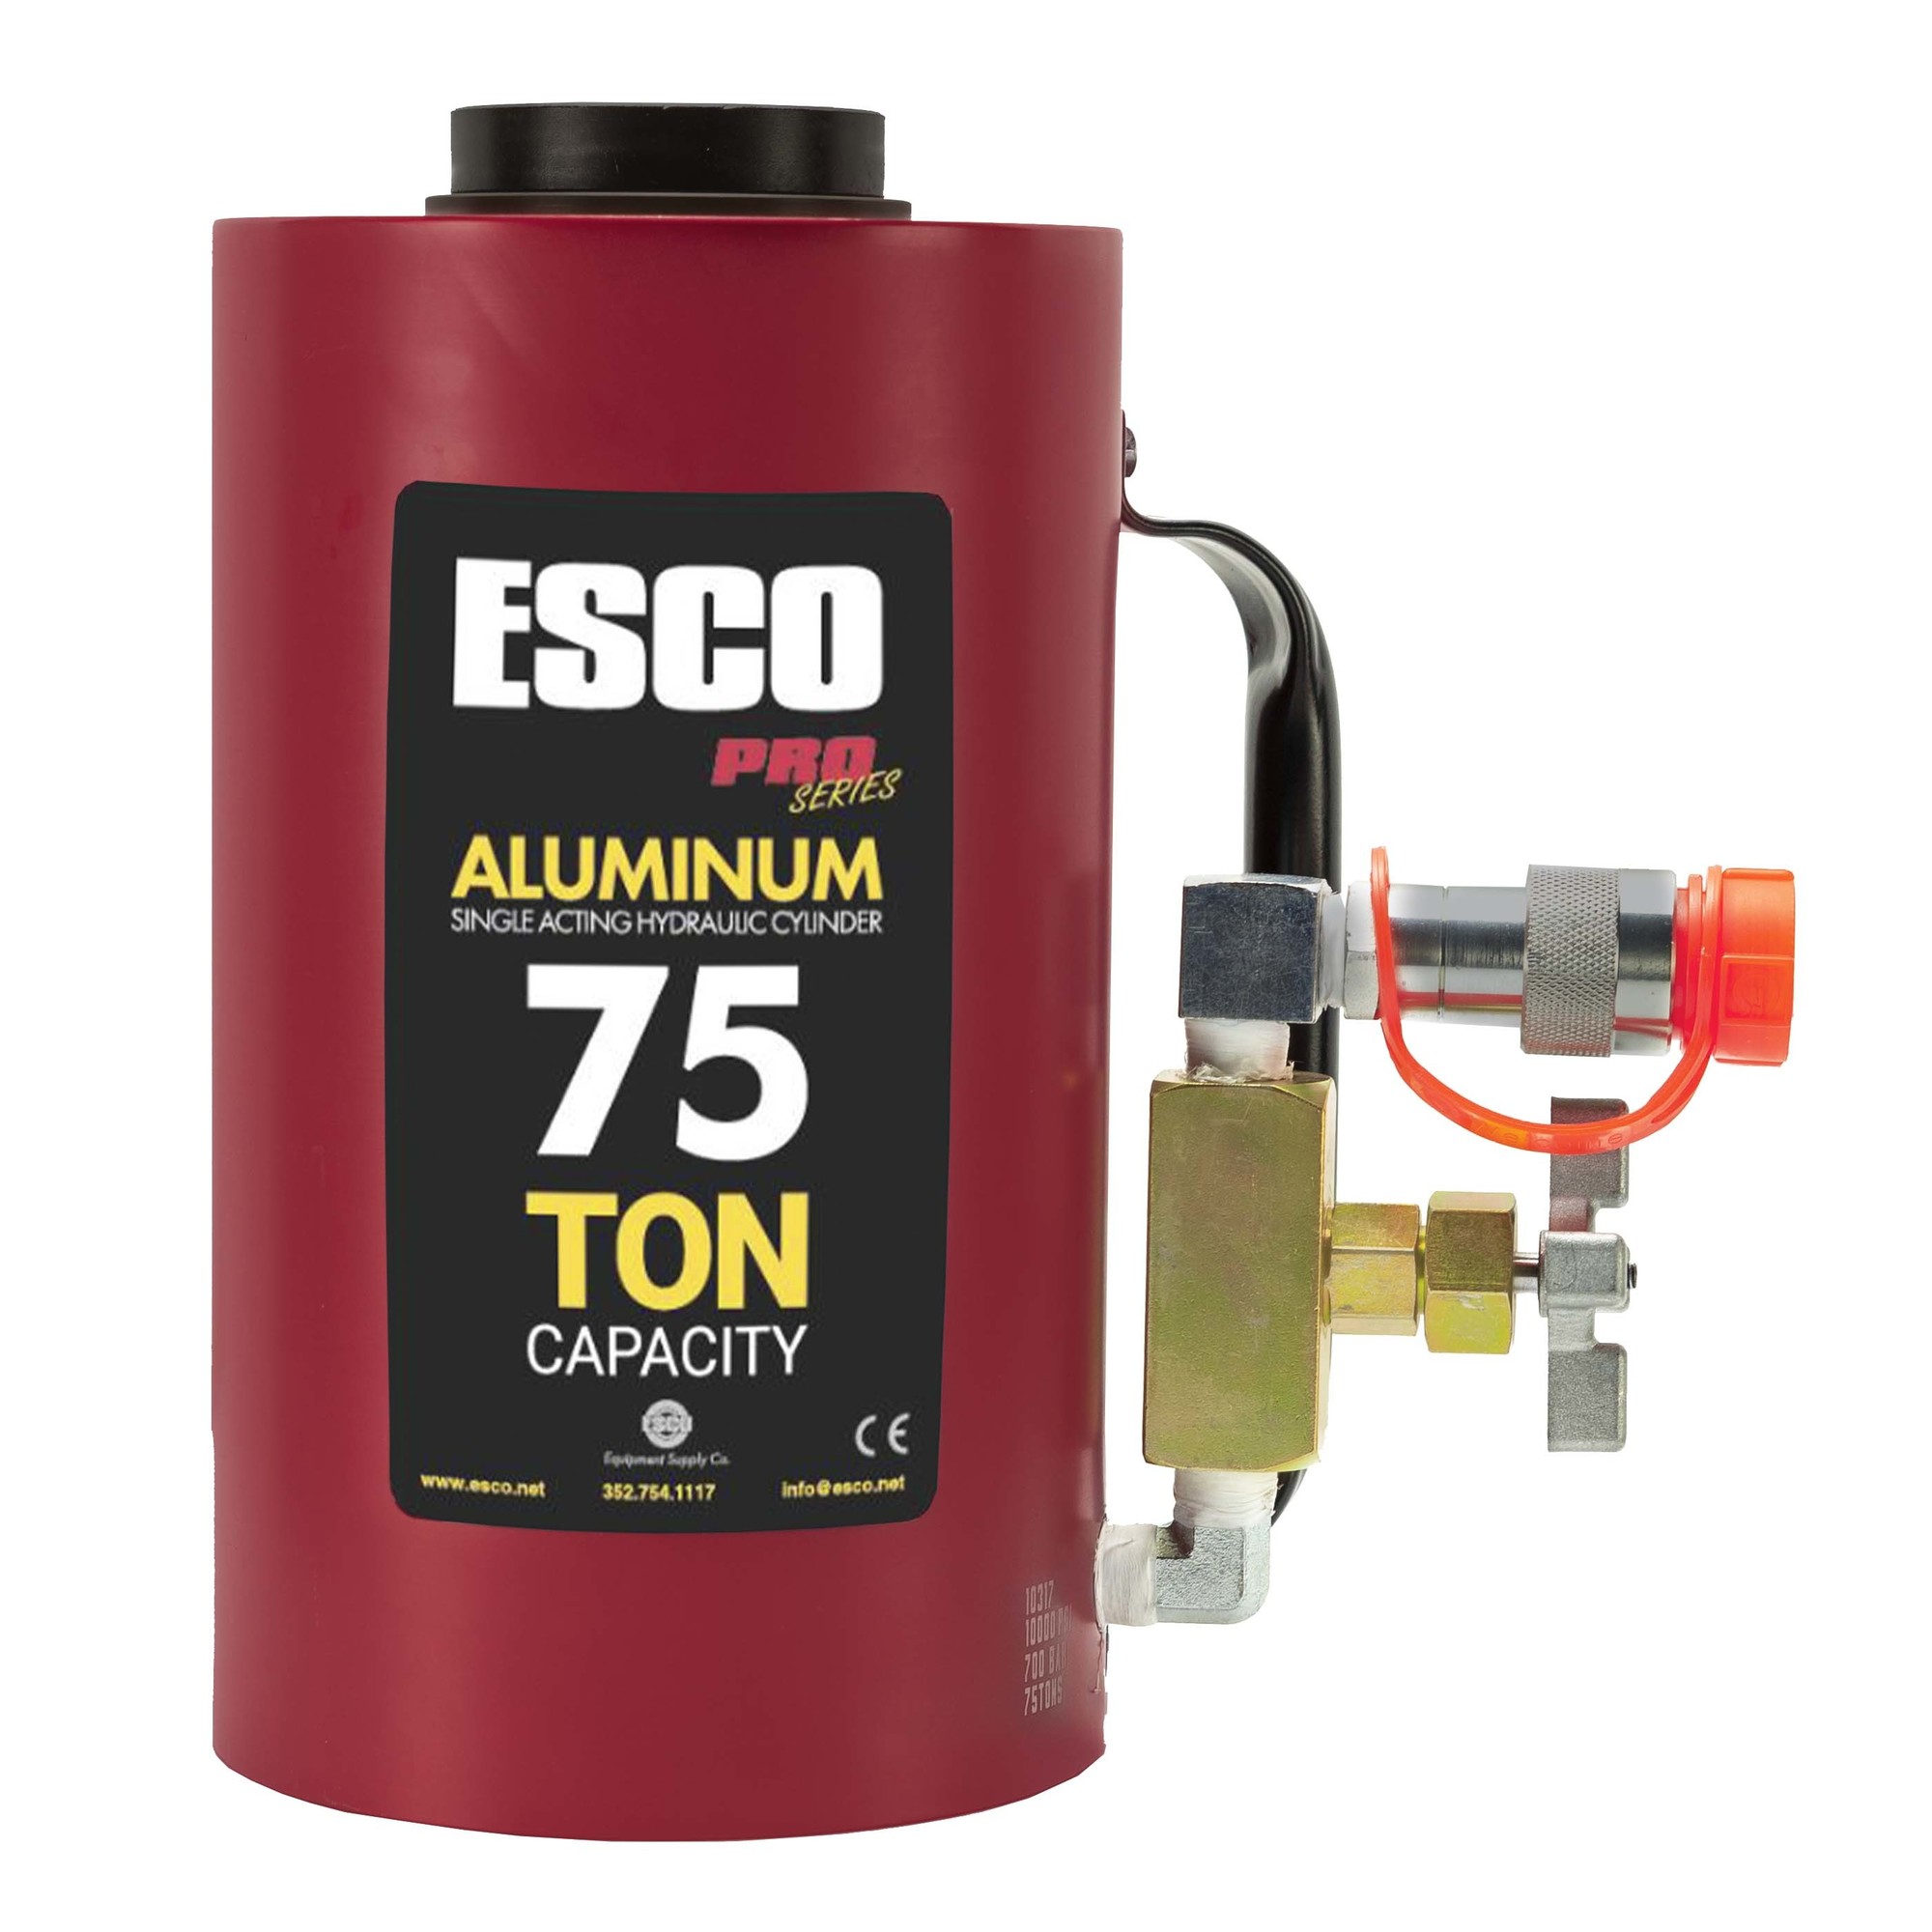 ESCO, 75 Ton Aluminum Jack, Lift Capacity 75 Tons, Model 10317